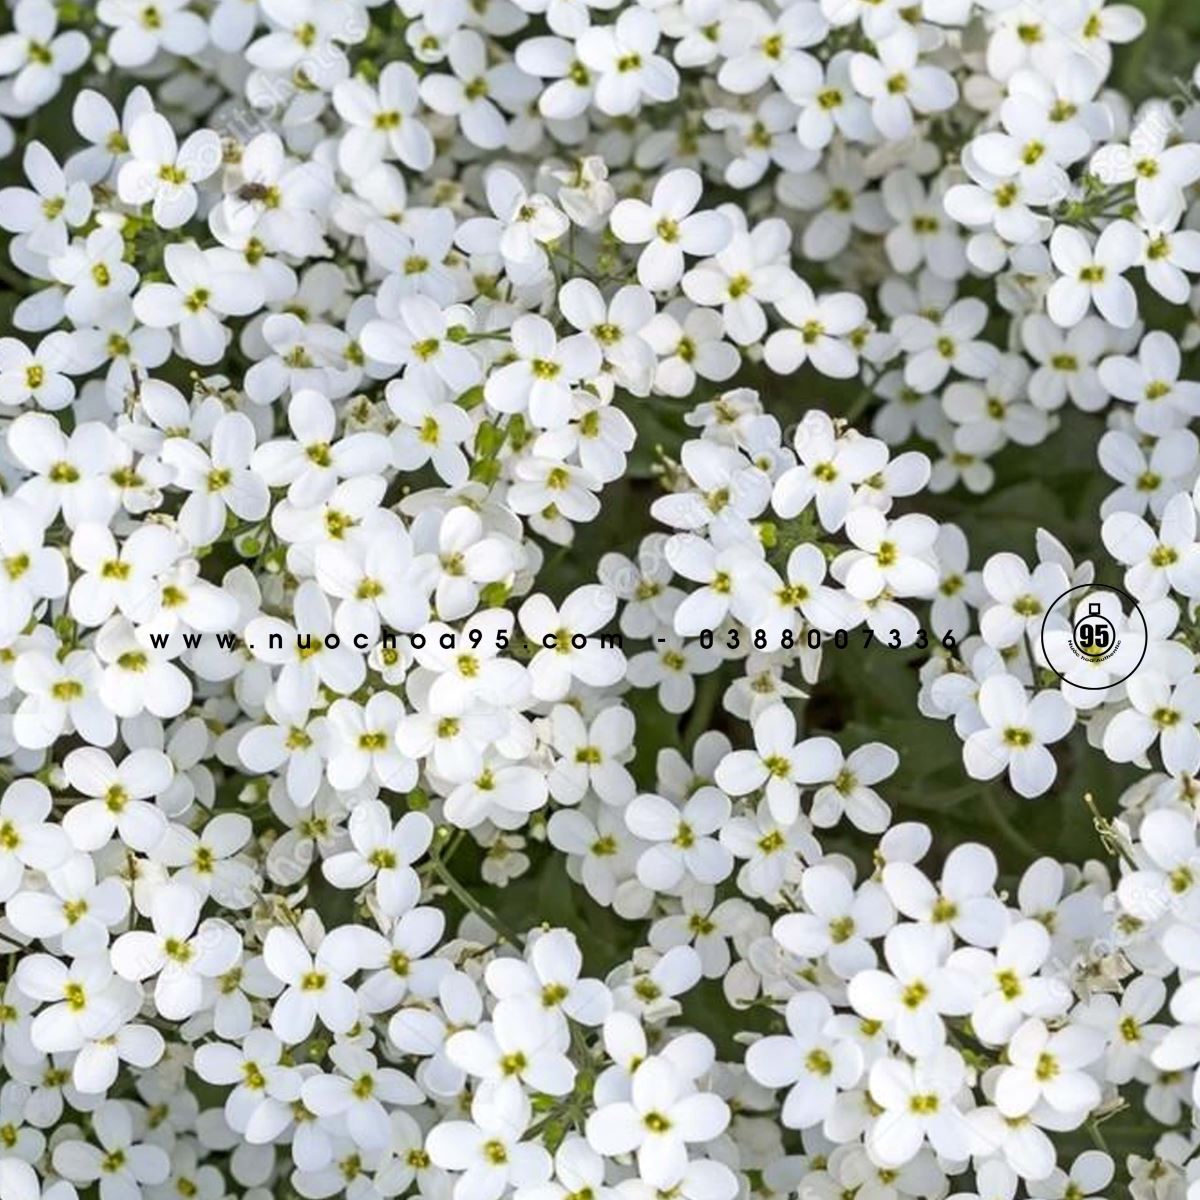 Hoa trắng